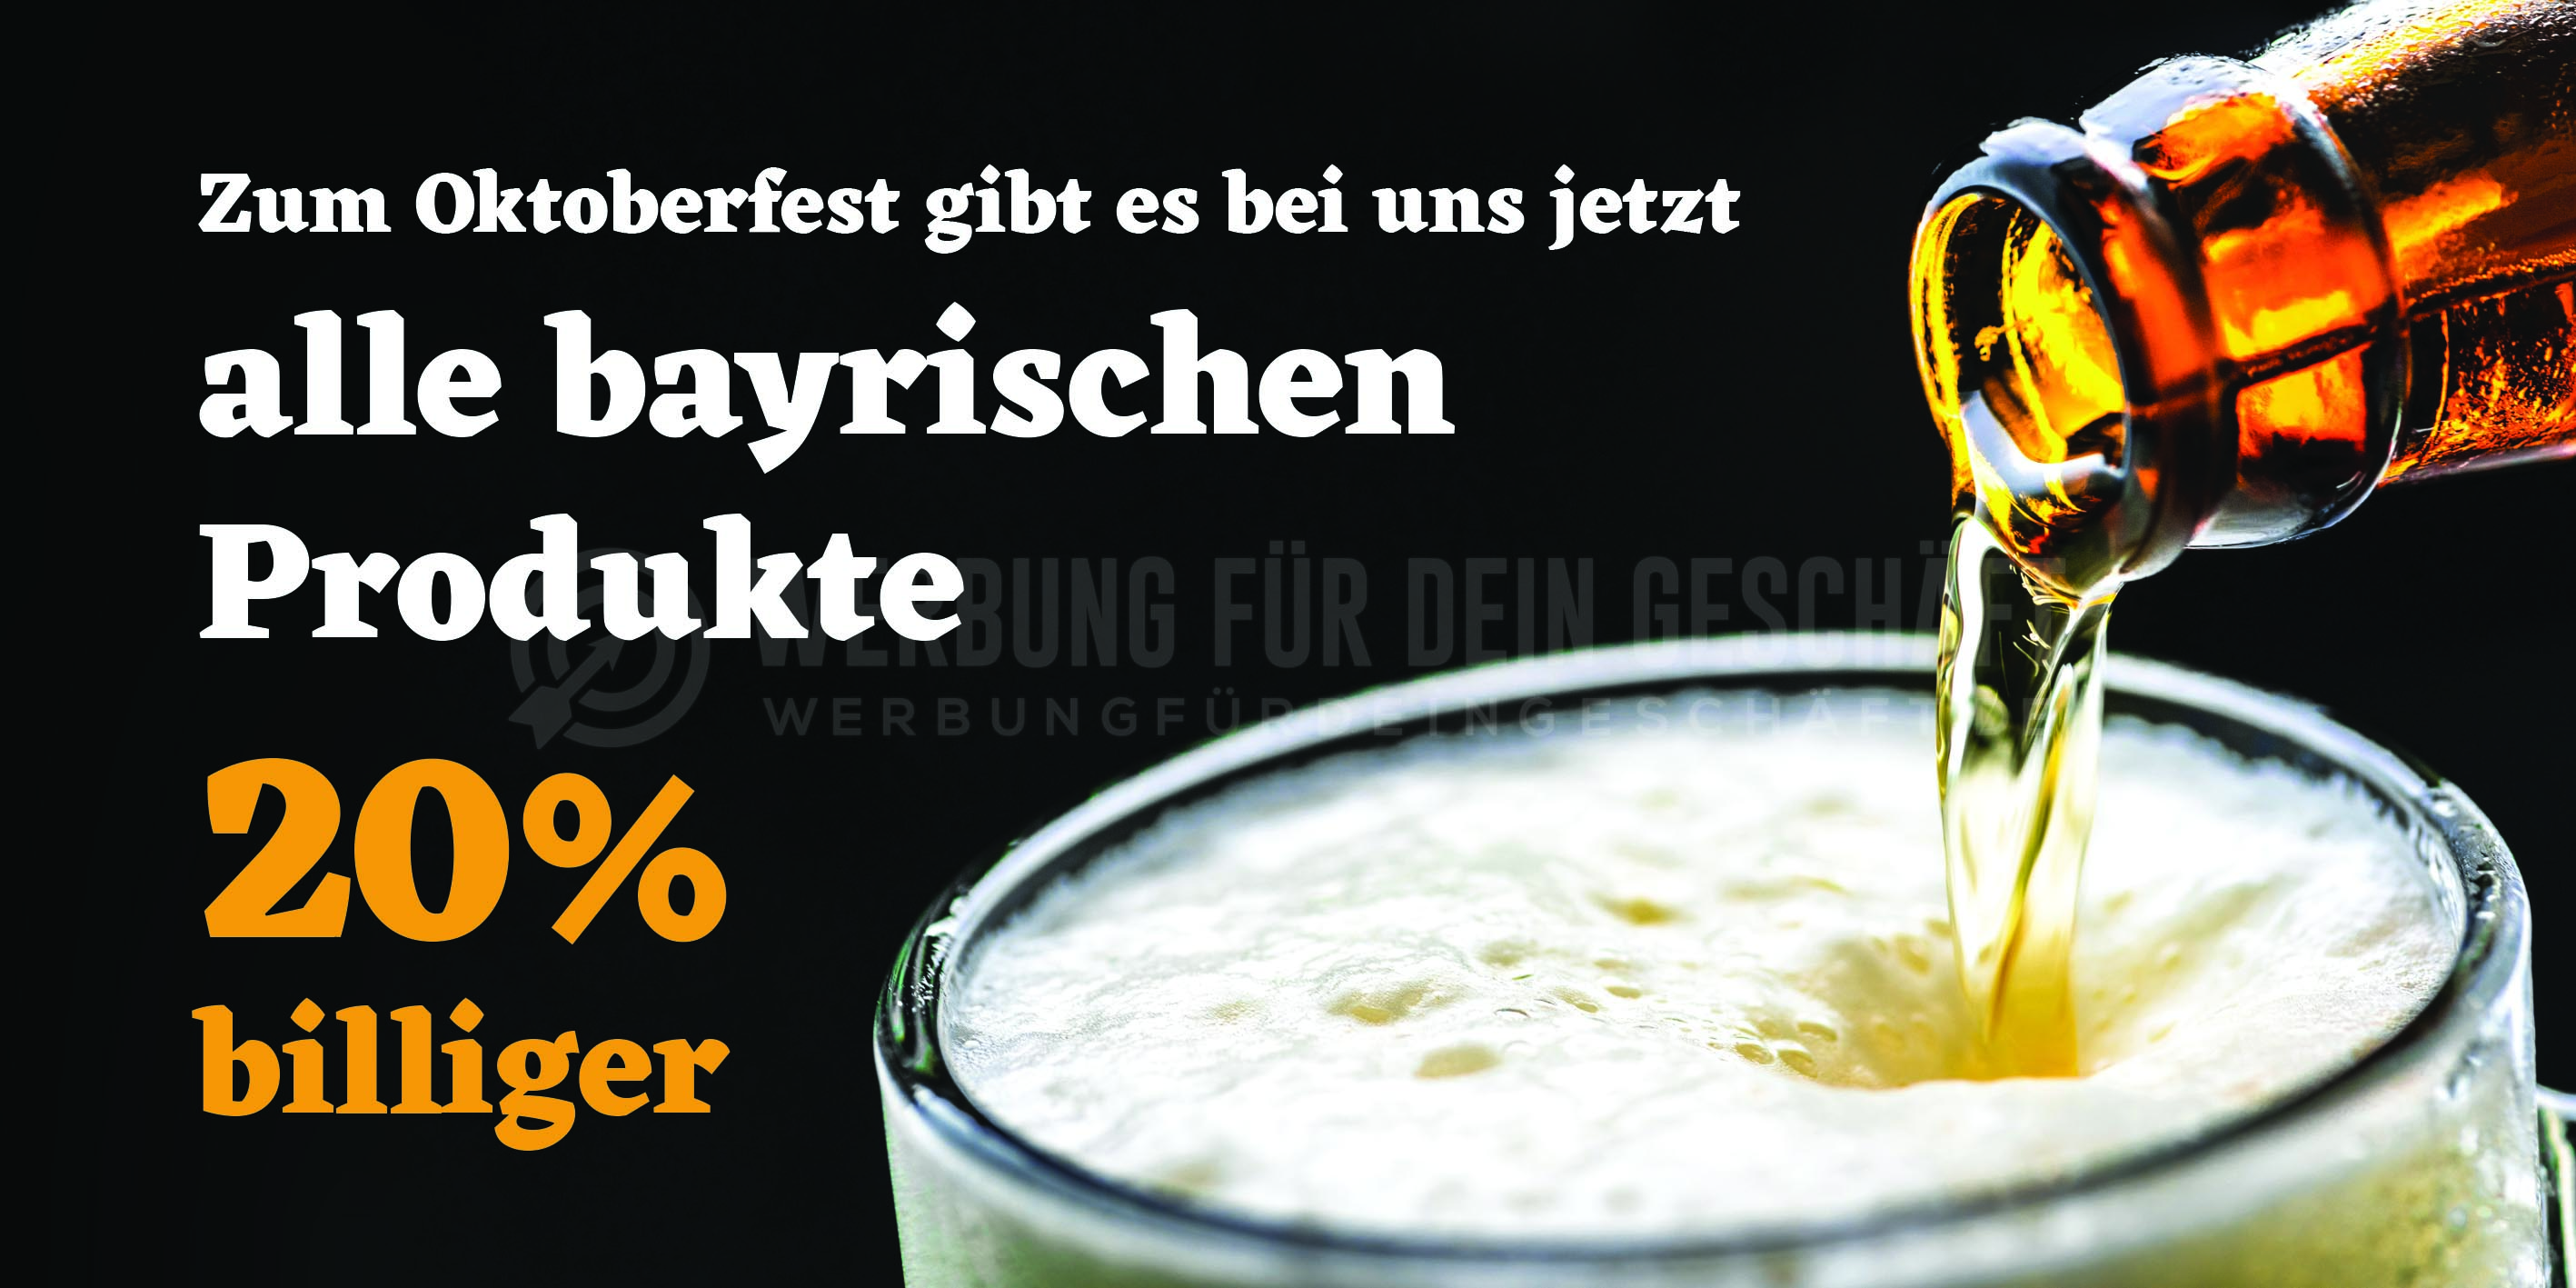 2:1 | Rabatt auf bayrische Produkte Poster | Poster auch in DIN A 1 | 2 zu 1 Format